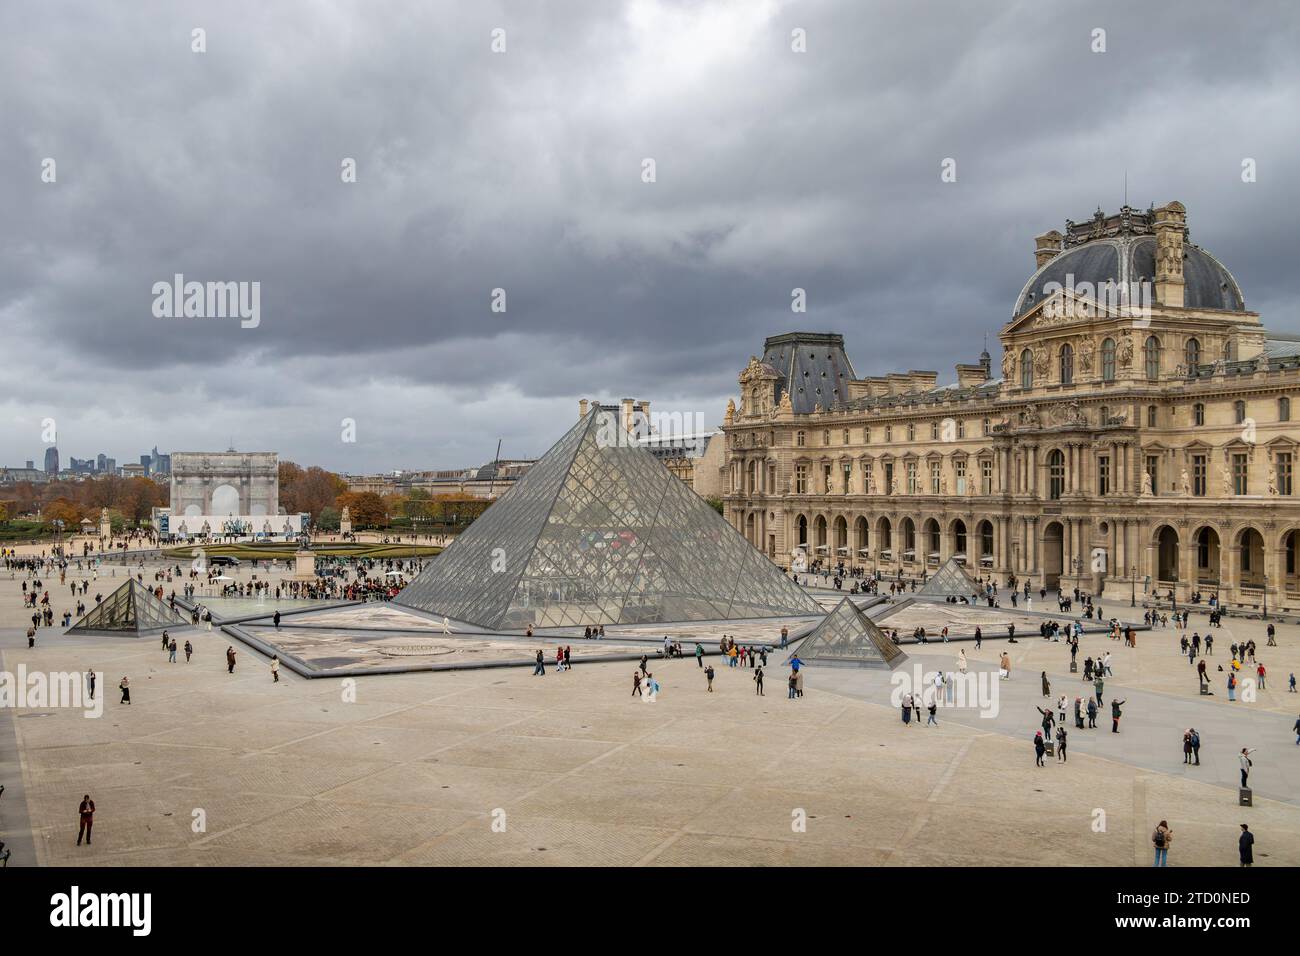 La pyramide du Louvre est une grande structure de verre et de métal la pyramide et sert d'entrée principale au Musée du Louvre à Paris, France Banque D'Images